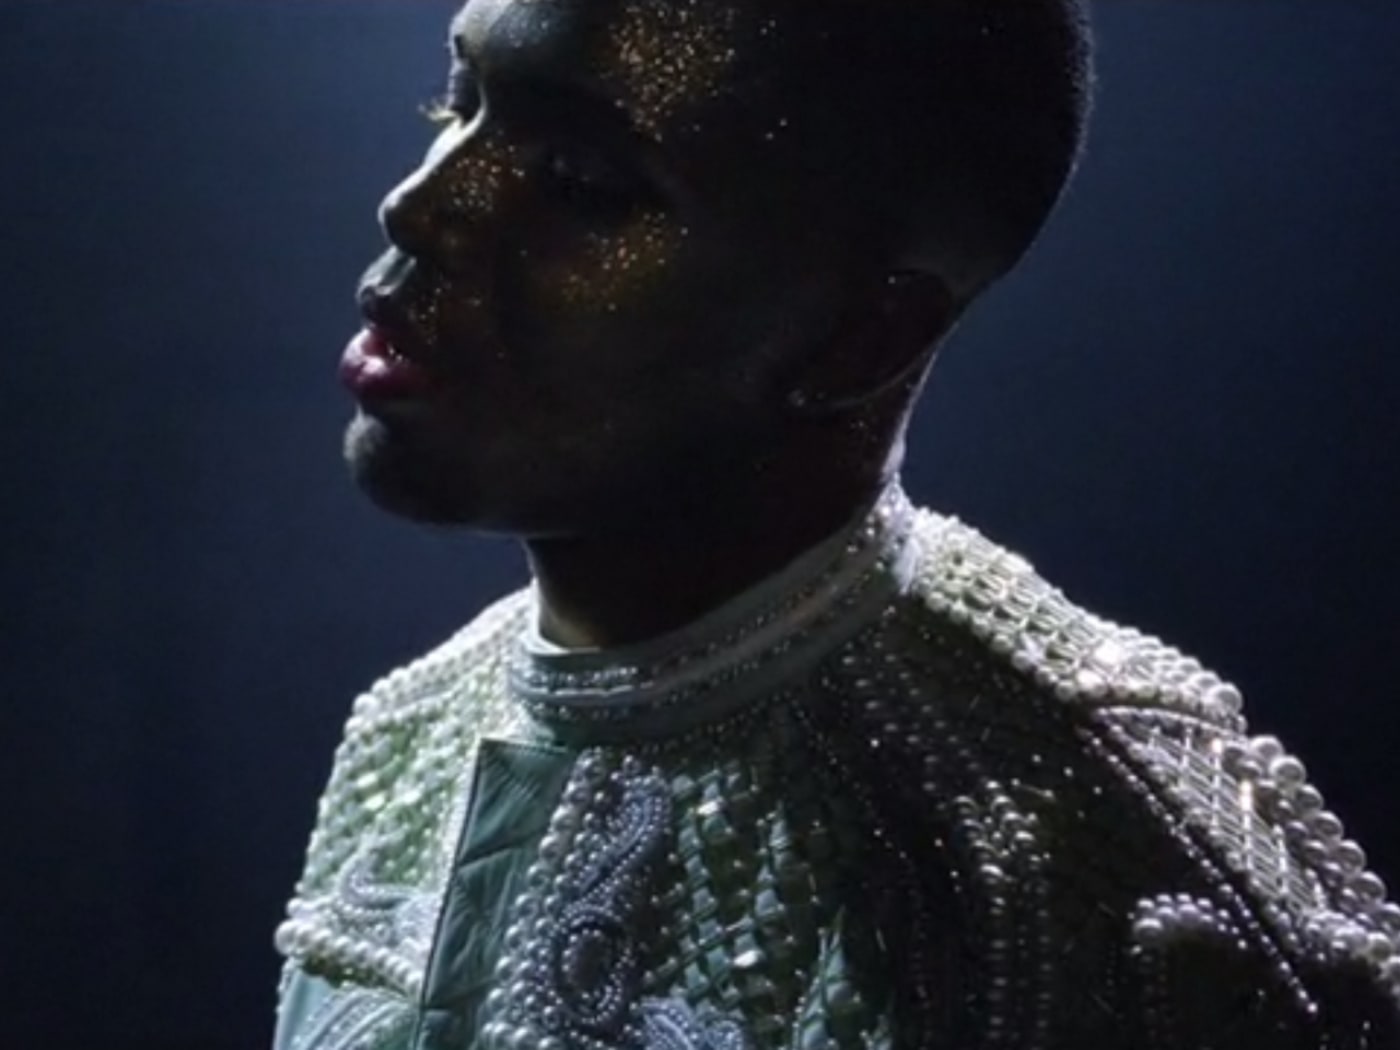 Frank Ocean in the "Nike" video